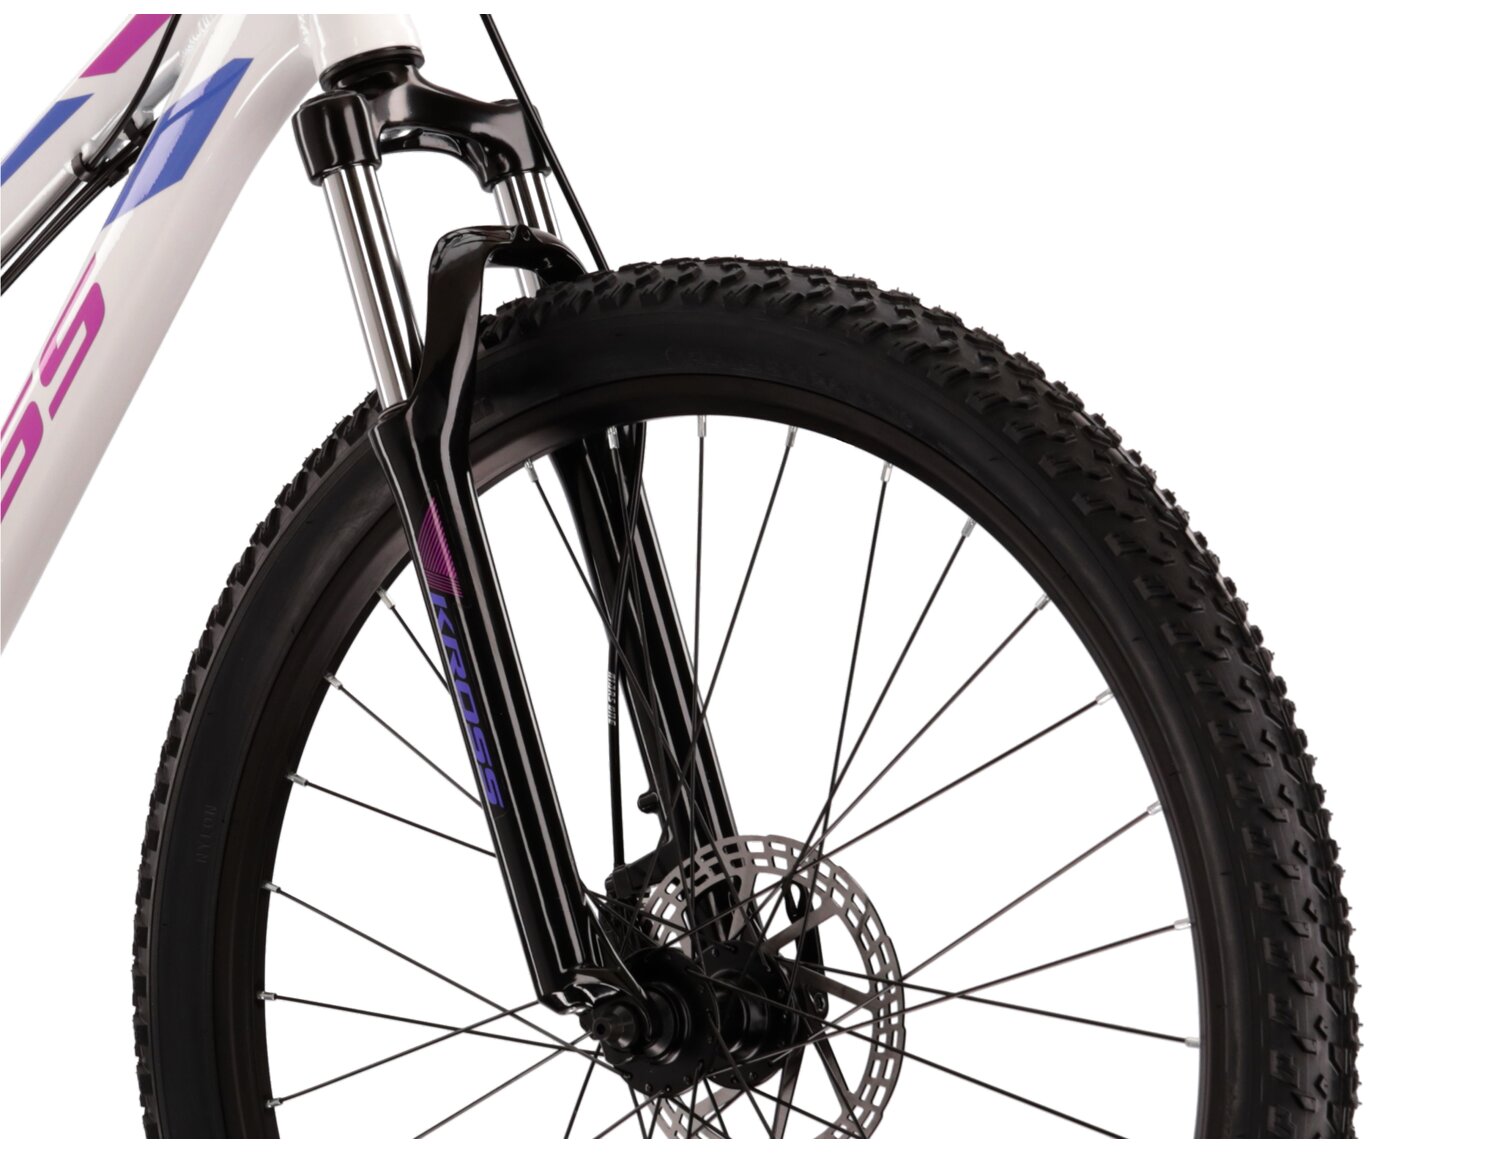  Aluminowa rama, amortyzowany widelec Zoom Forgo 565 o skoku 80mm oraz opony o szerokości 2,1 cala w damskim rowerze górskim MTB Woman KROSS Lea 3.0